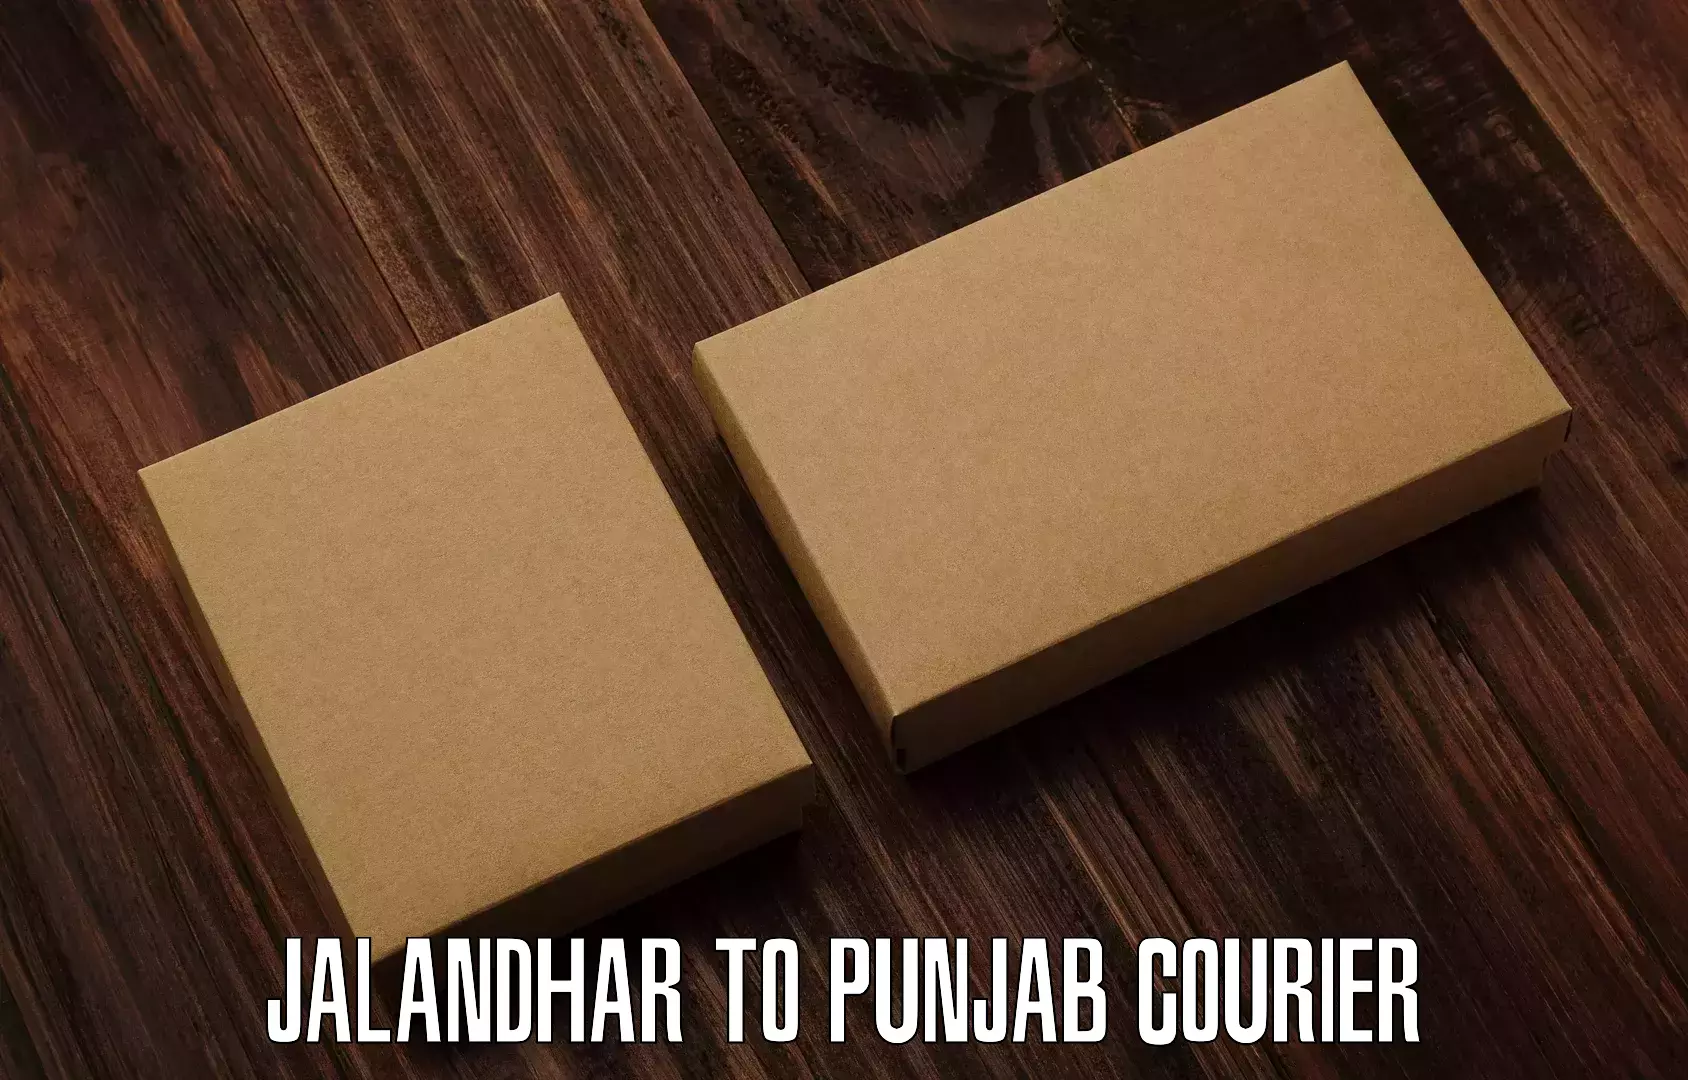 Package delivery network Jalandhar to Jalalabad